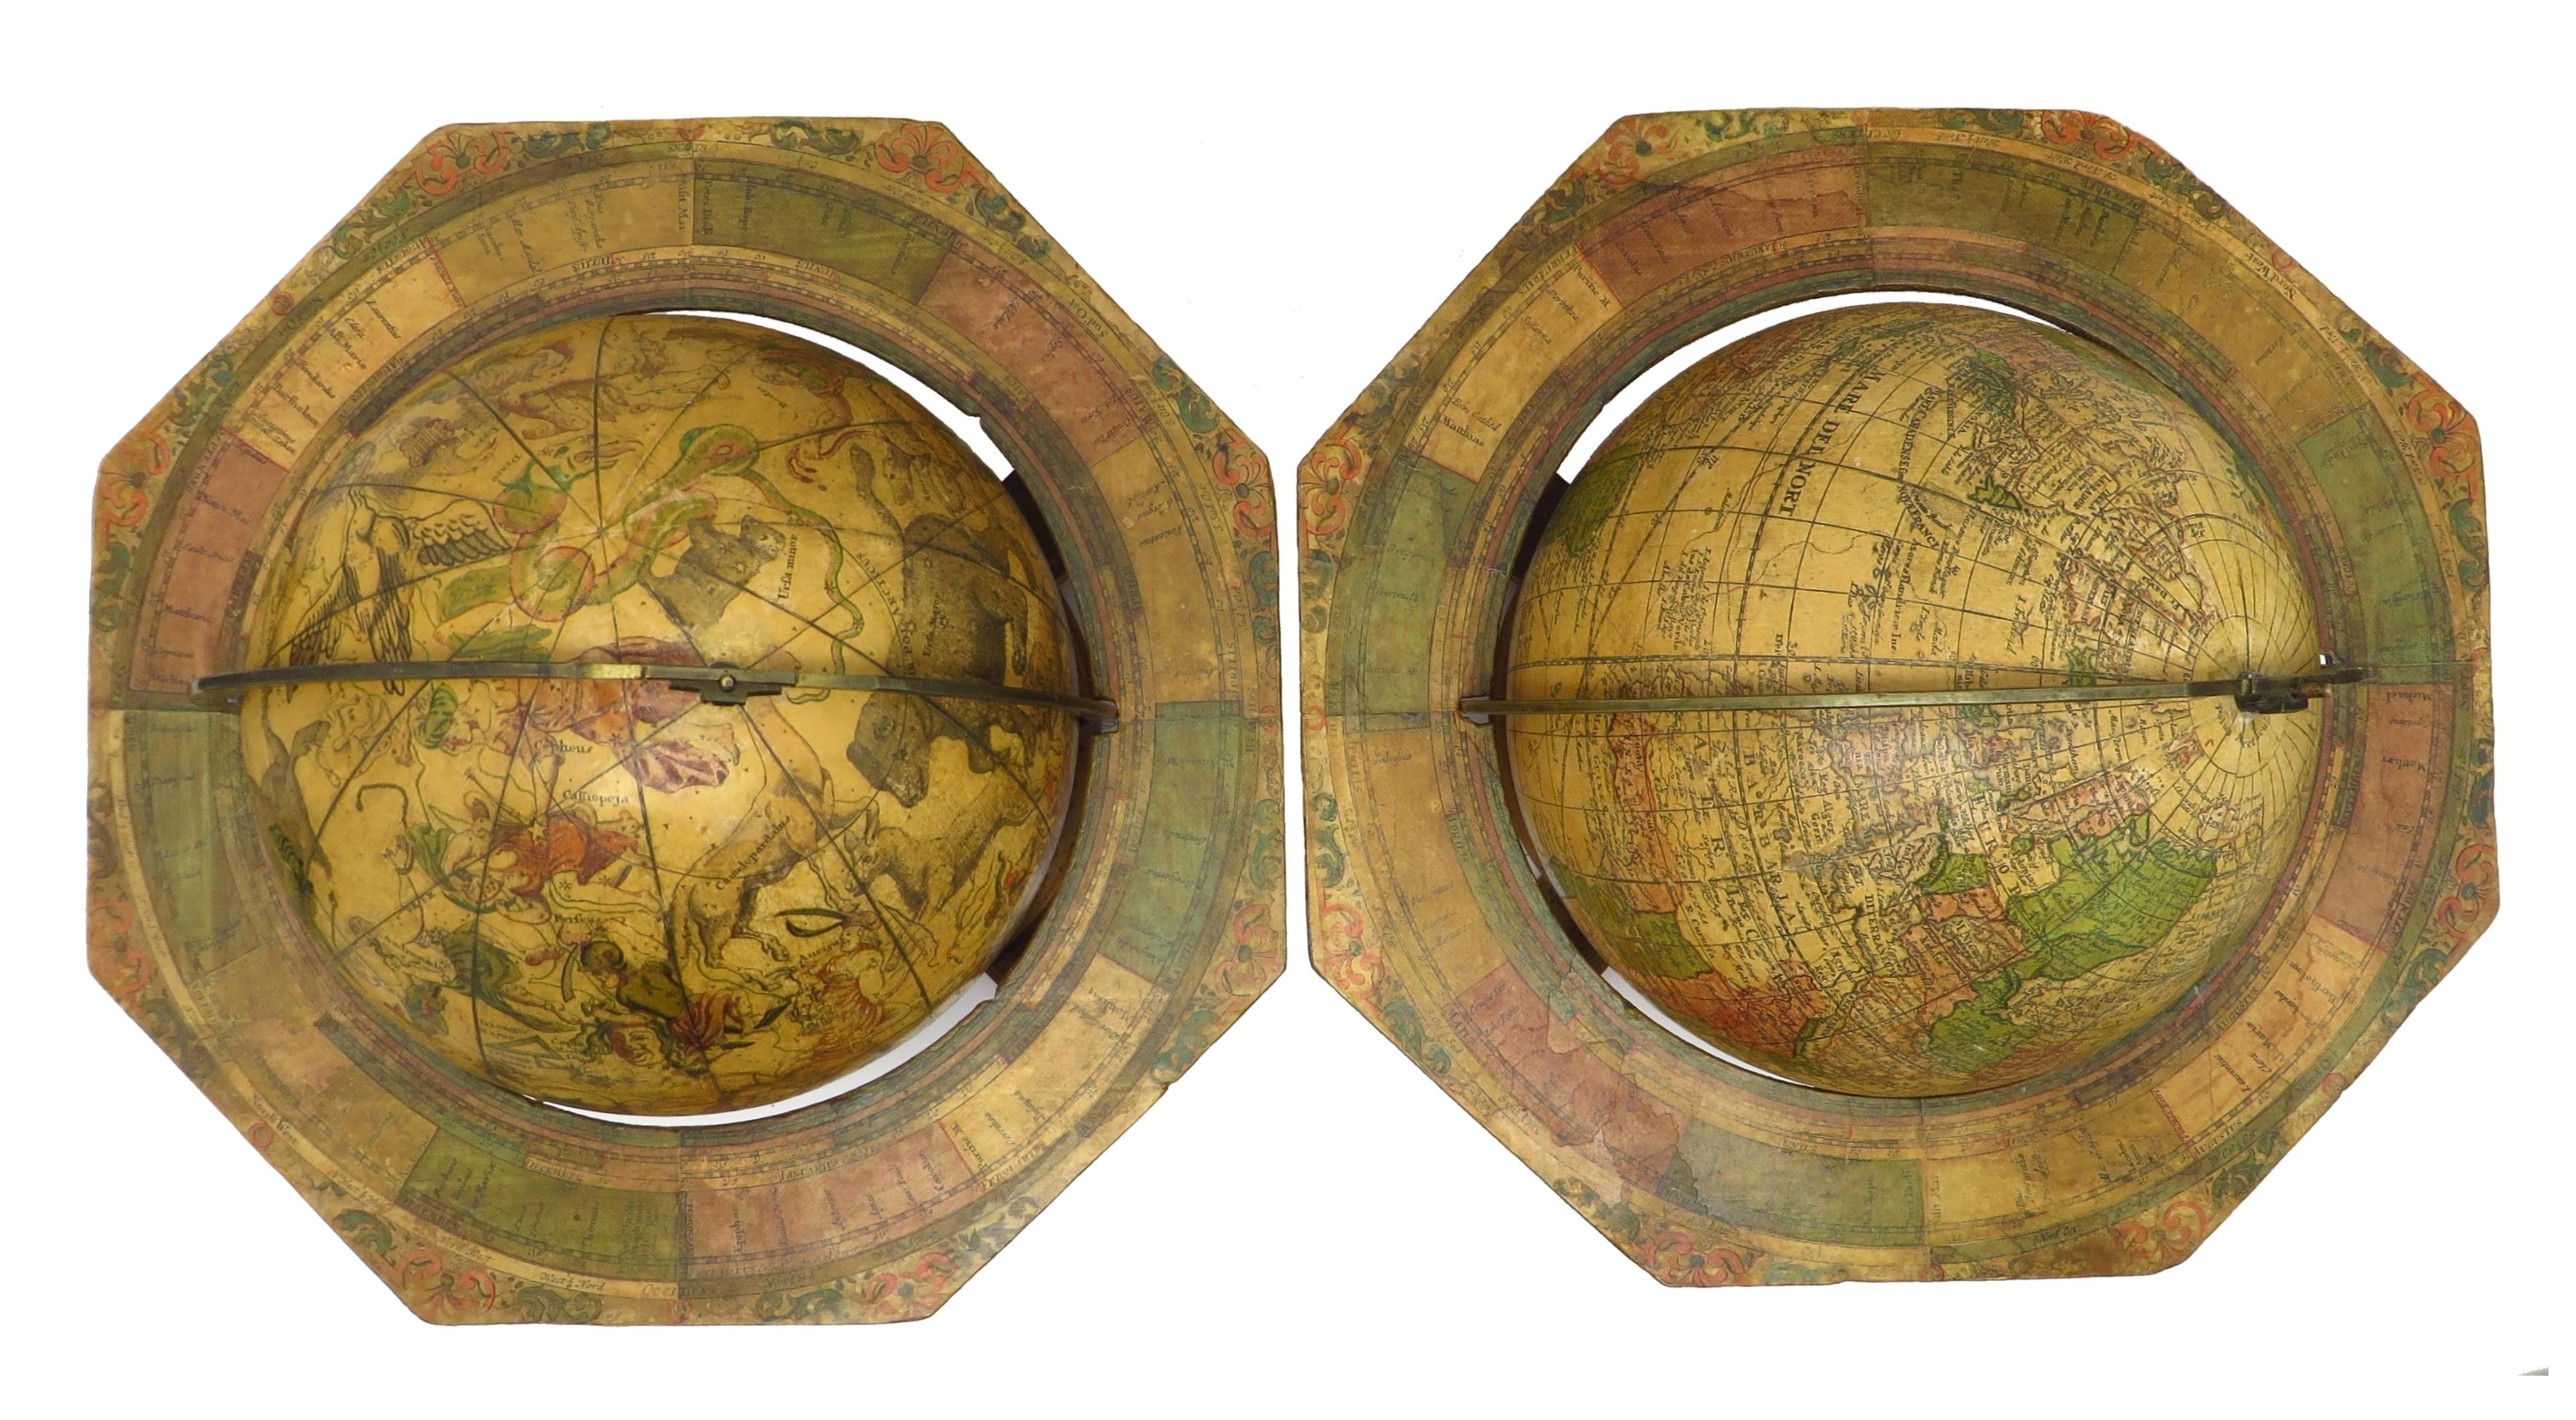 These pair of globes, dated 1730, are original and in fine condition.

Title:
Globus terrestris novus Loca Terrae insigniora sec. praestant Astron. et Geogr. observationes sistens opera Ioh. Gabr. Doppelmaieri M.P.P. concinne traditus à Ioh. Georg